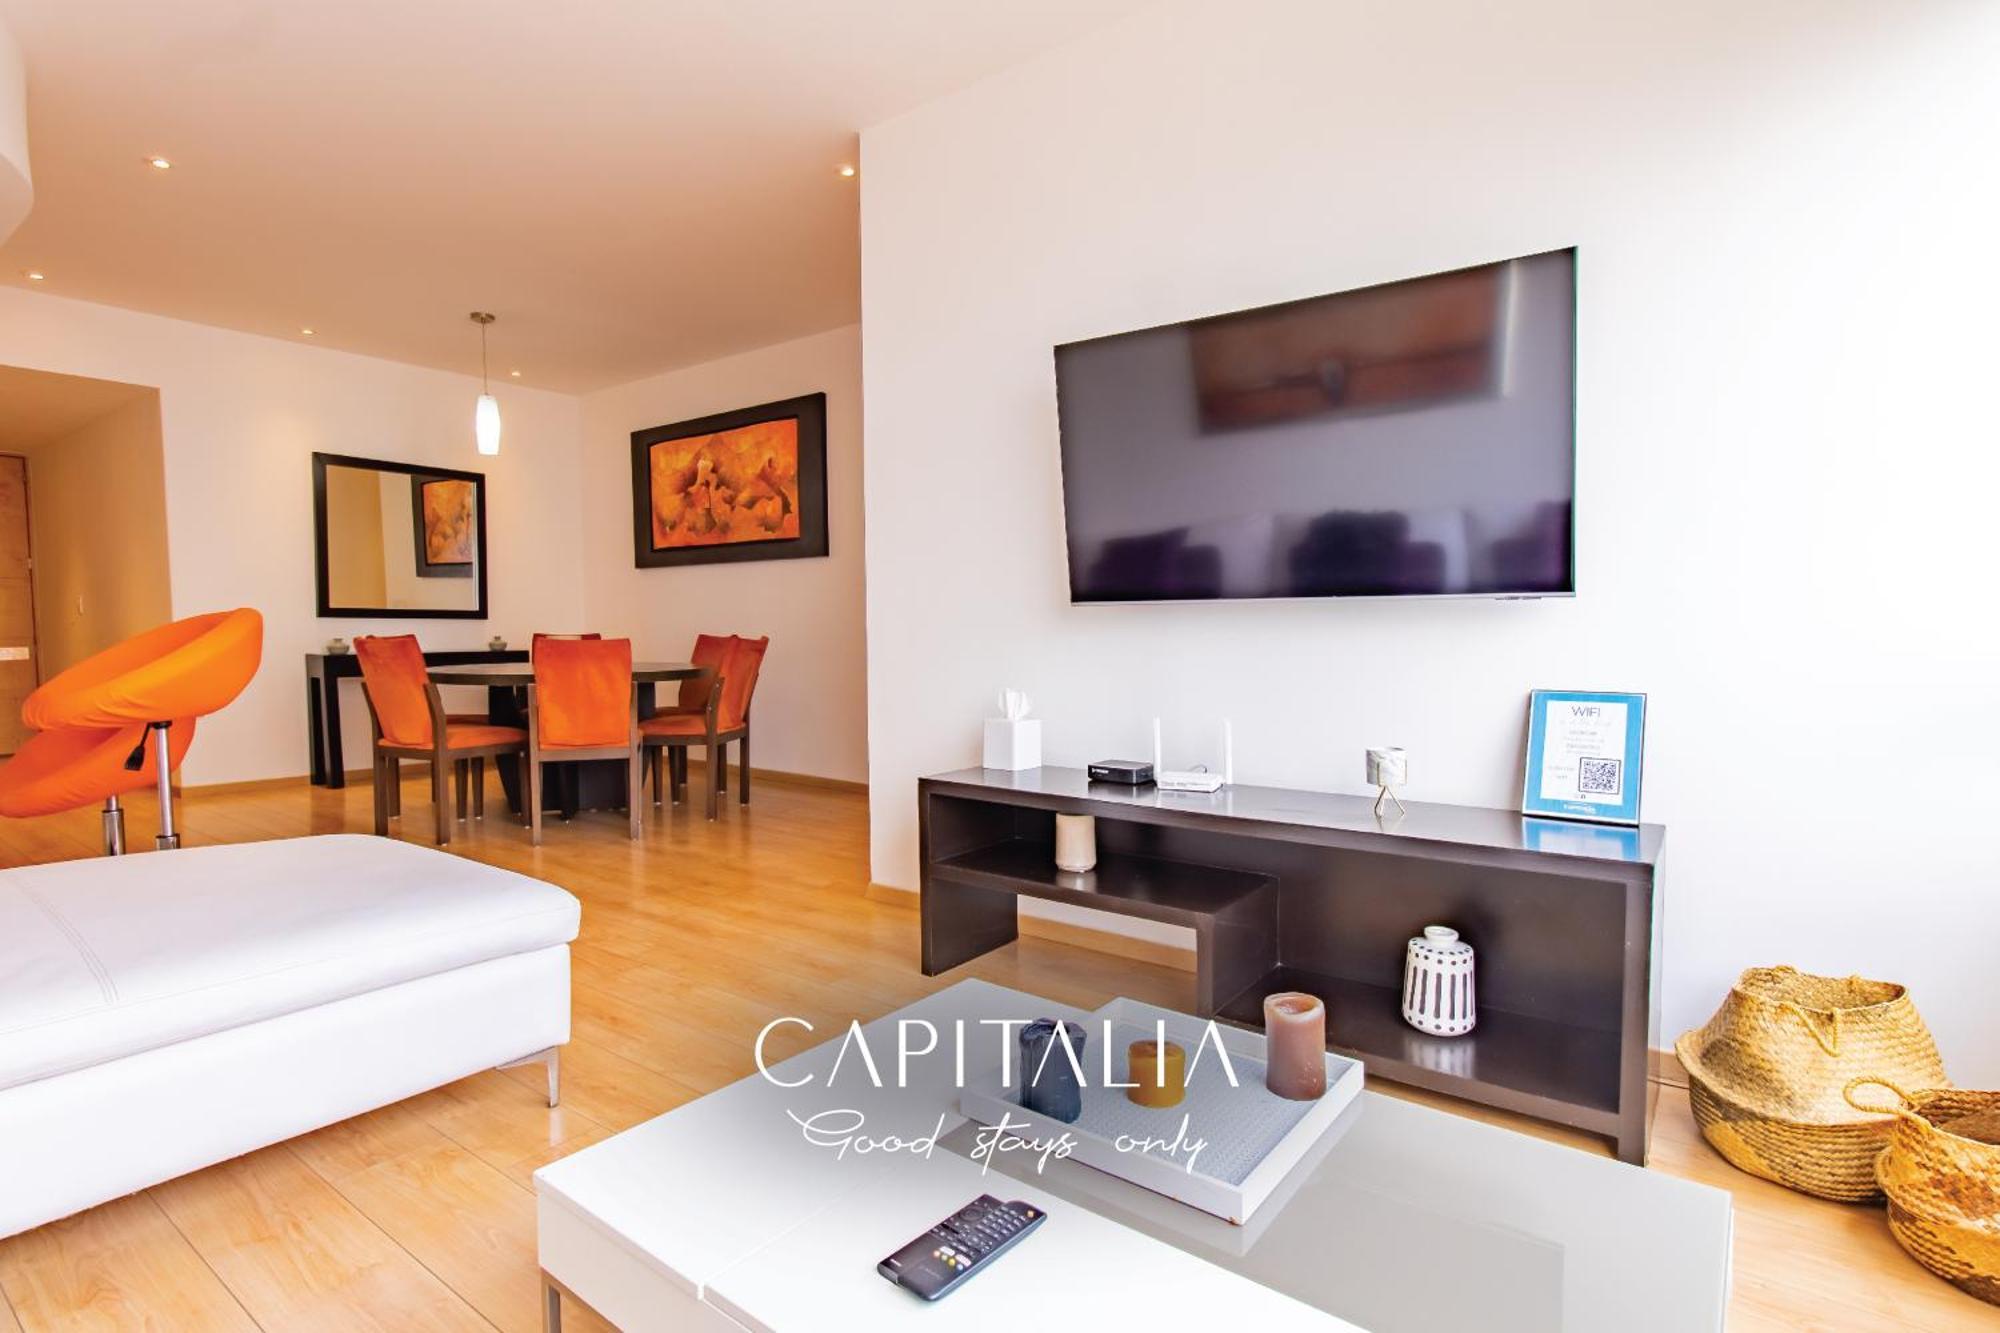 Capitalia - Apartments - Santa Fe Mexico City Room photo